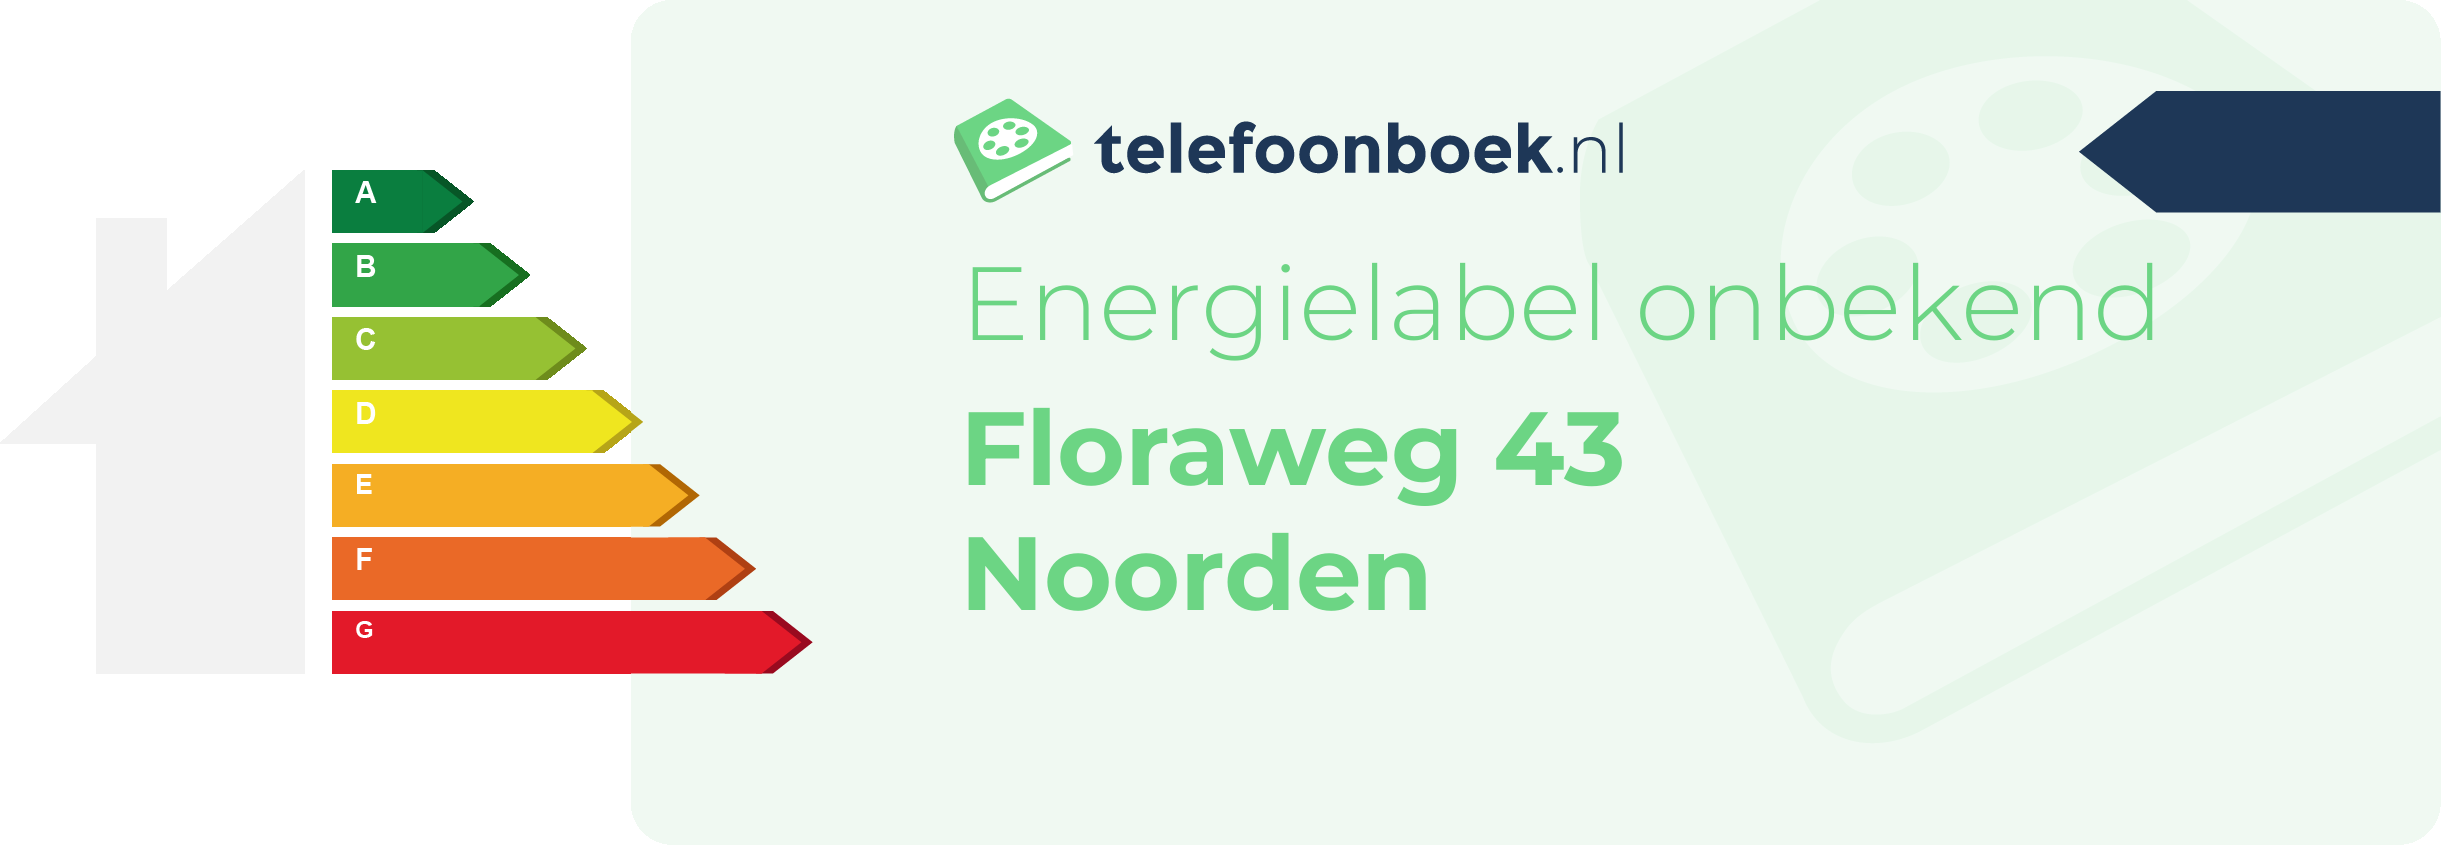 Energielabel Floraweg 43 Noorden